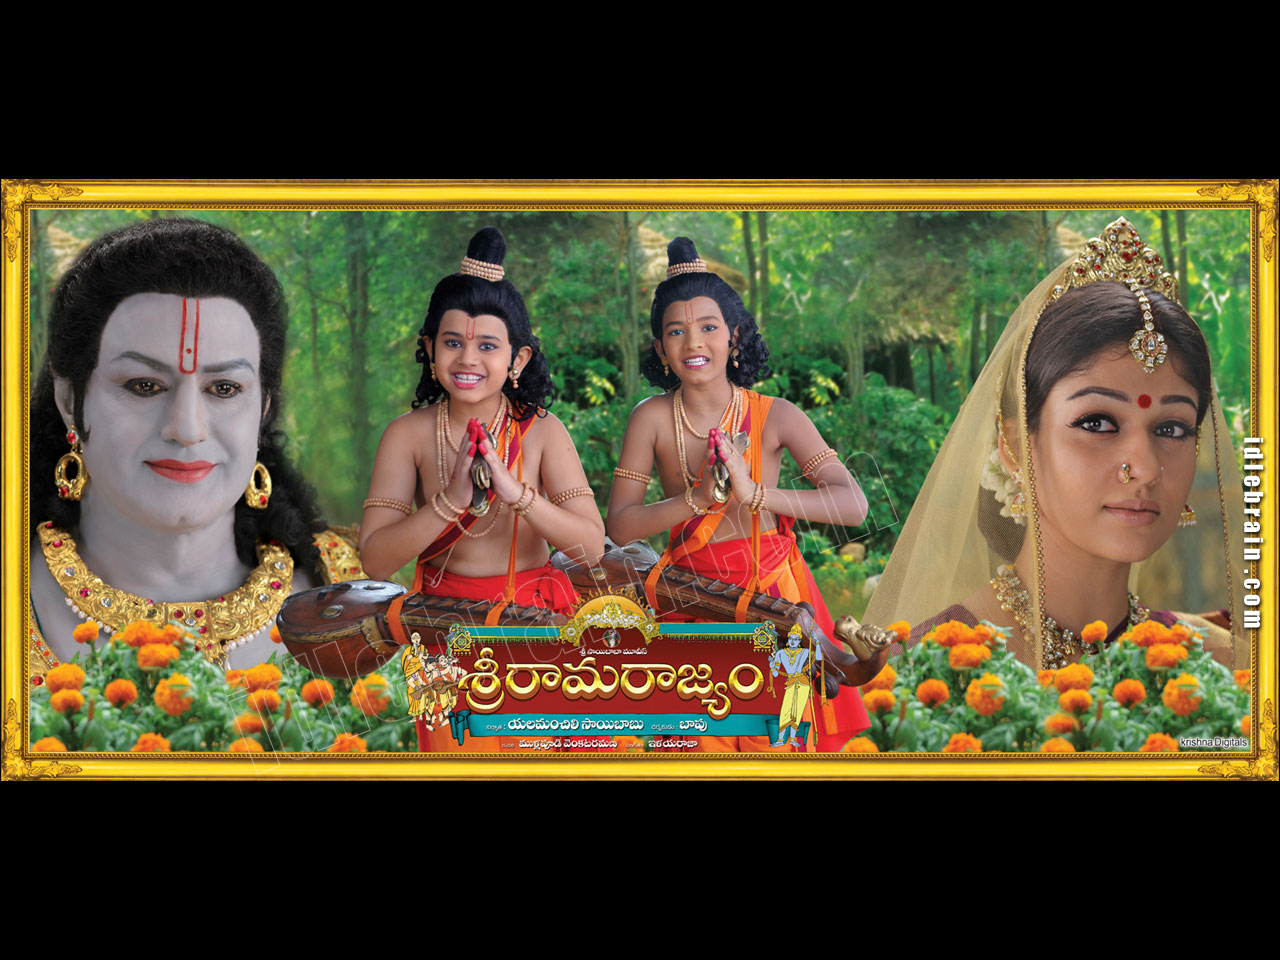 Sri Rama Rajyam